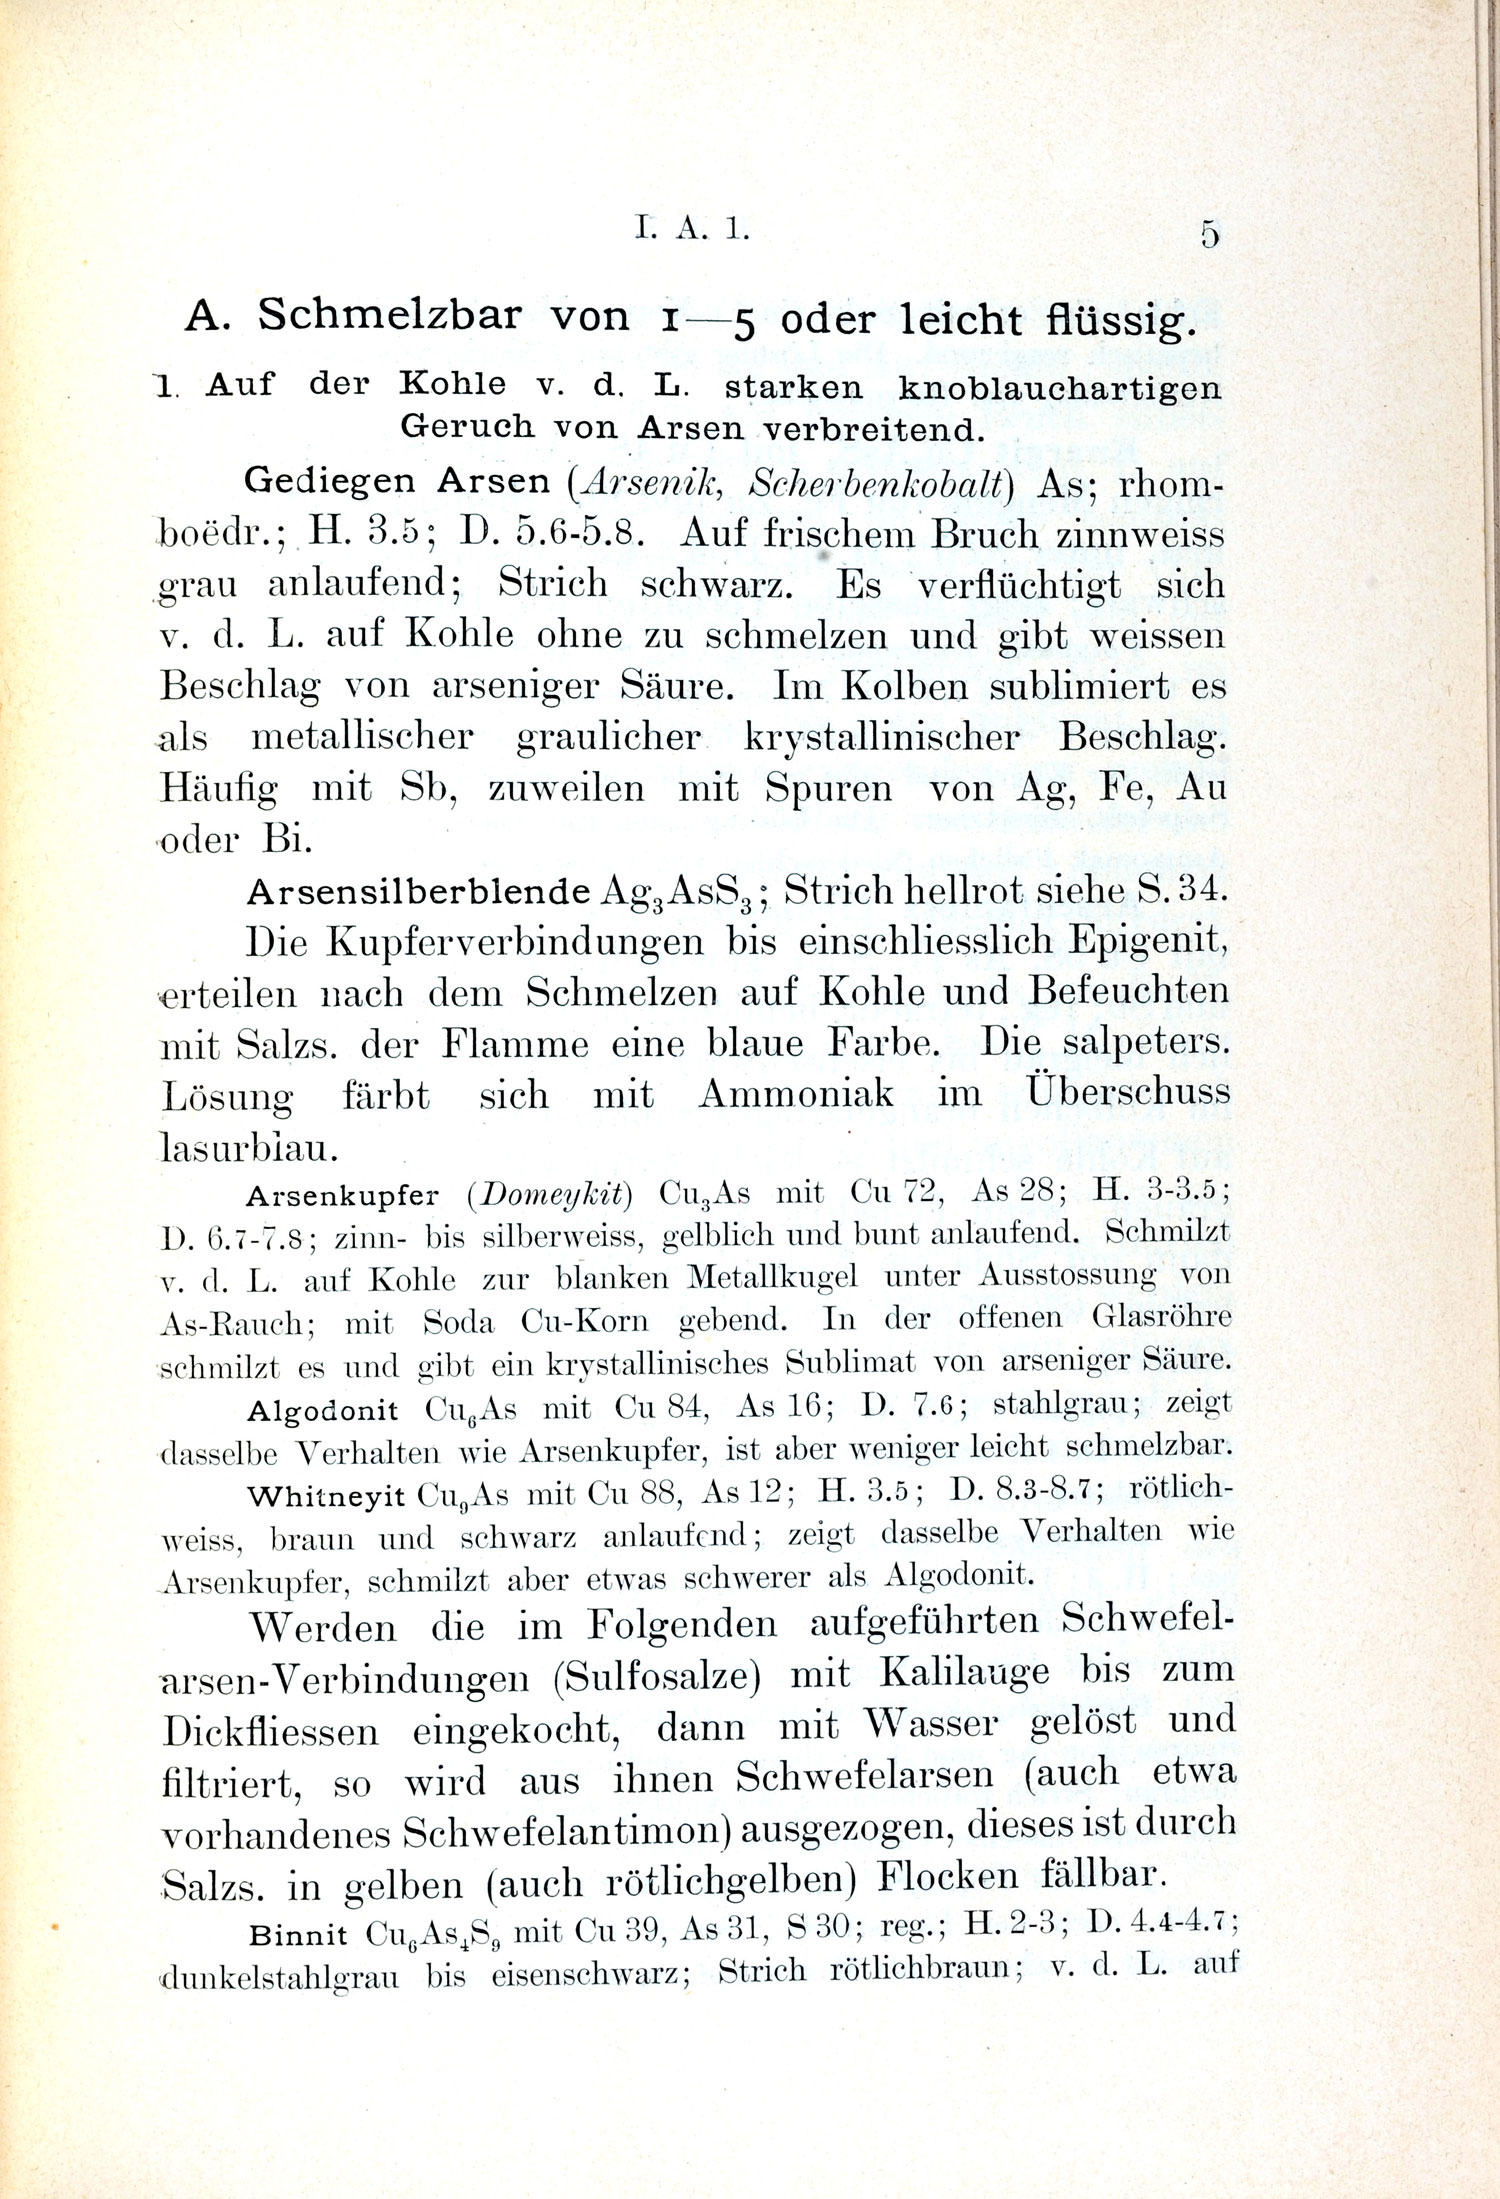 Kobell, Franz Wolfgang Ritter von (1907)